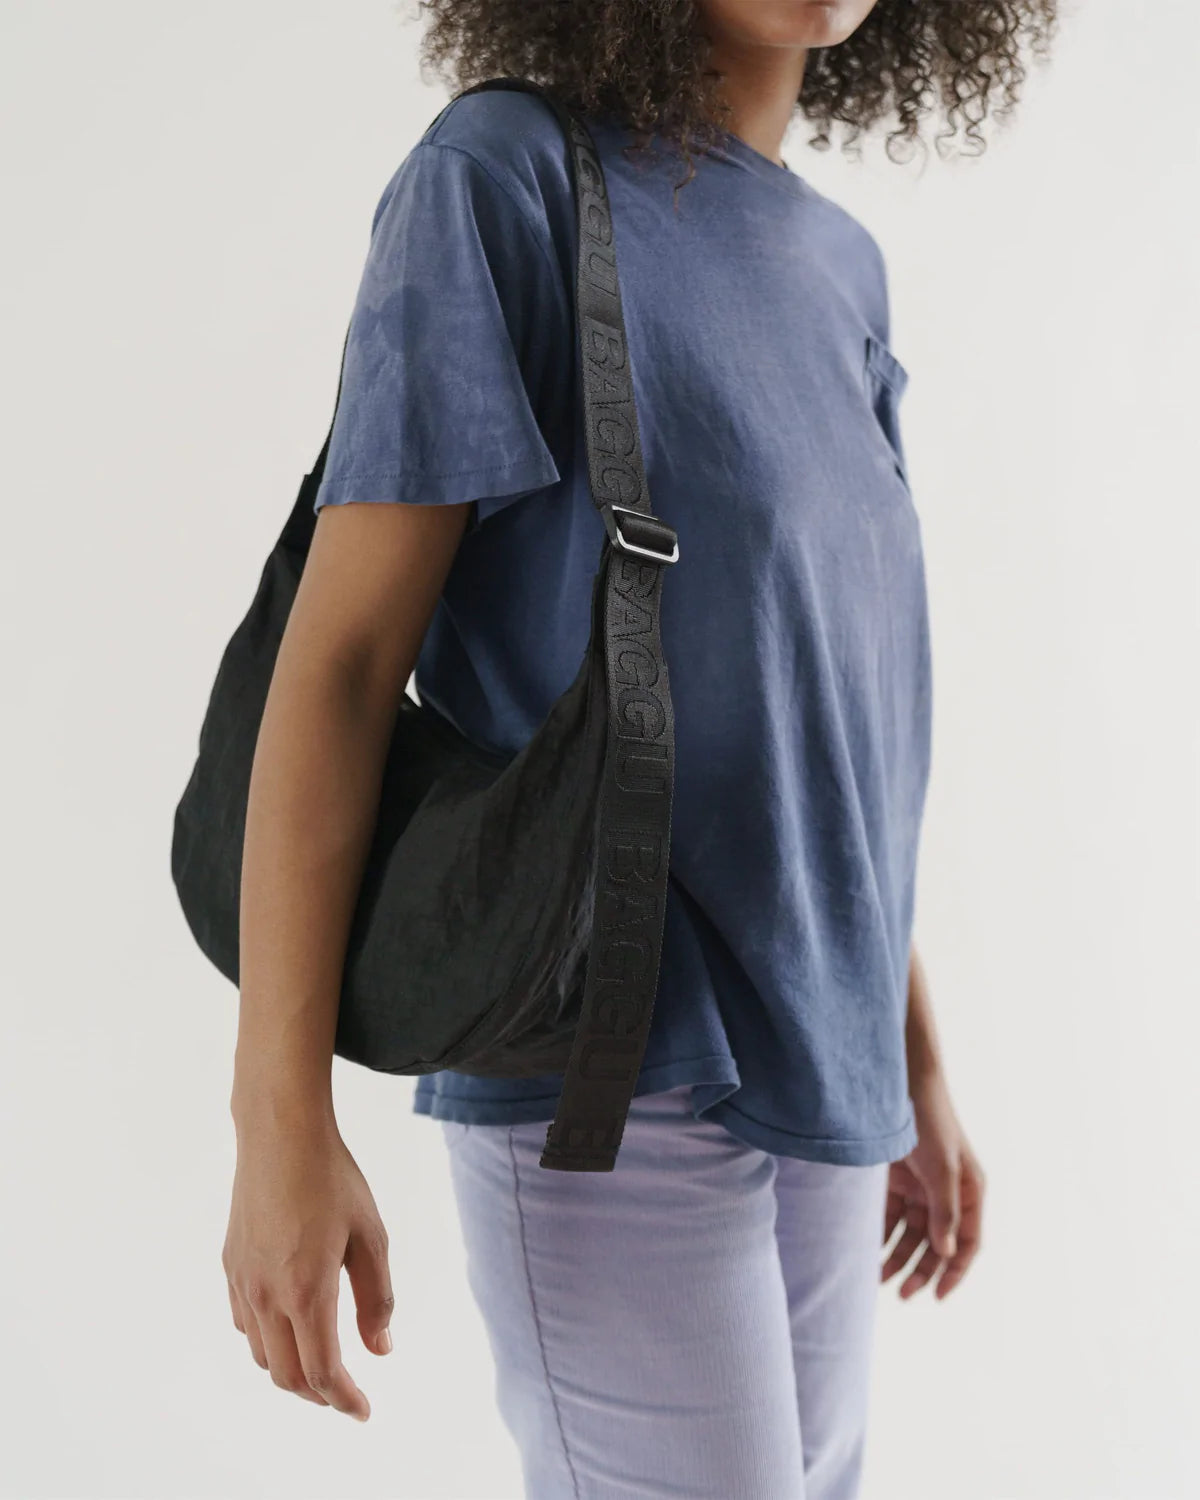 Baggu Medium Nylon Crescent Bag Black - Uncommon